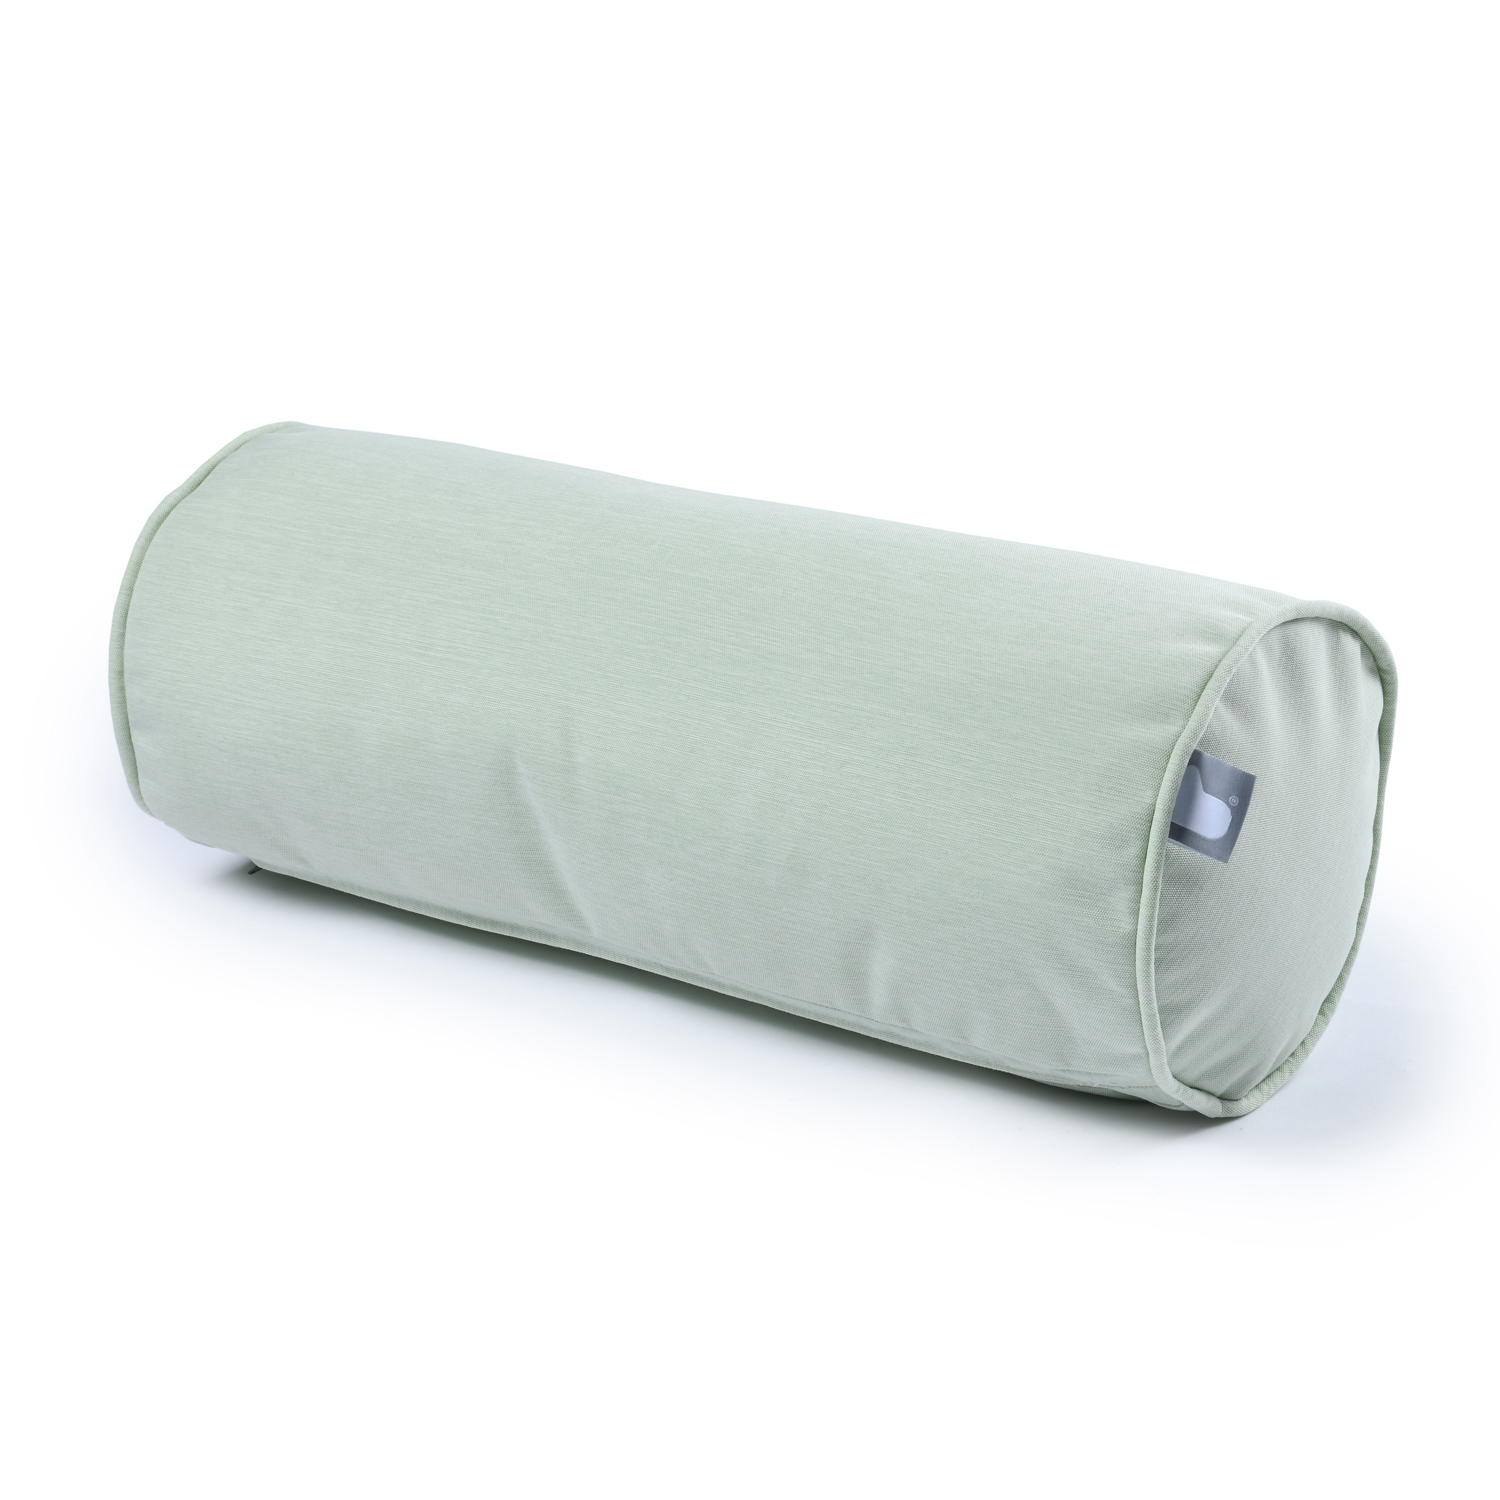 b-bolster extreme lounging Nackenrolle Pastellgrün 48cm breit wasserabweisend pflegeleicht UV-beständig